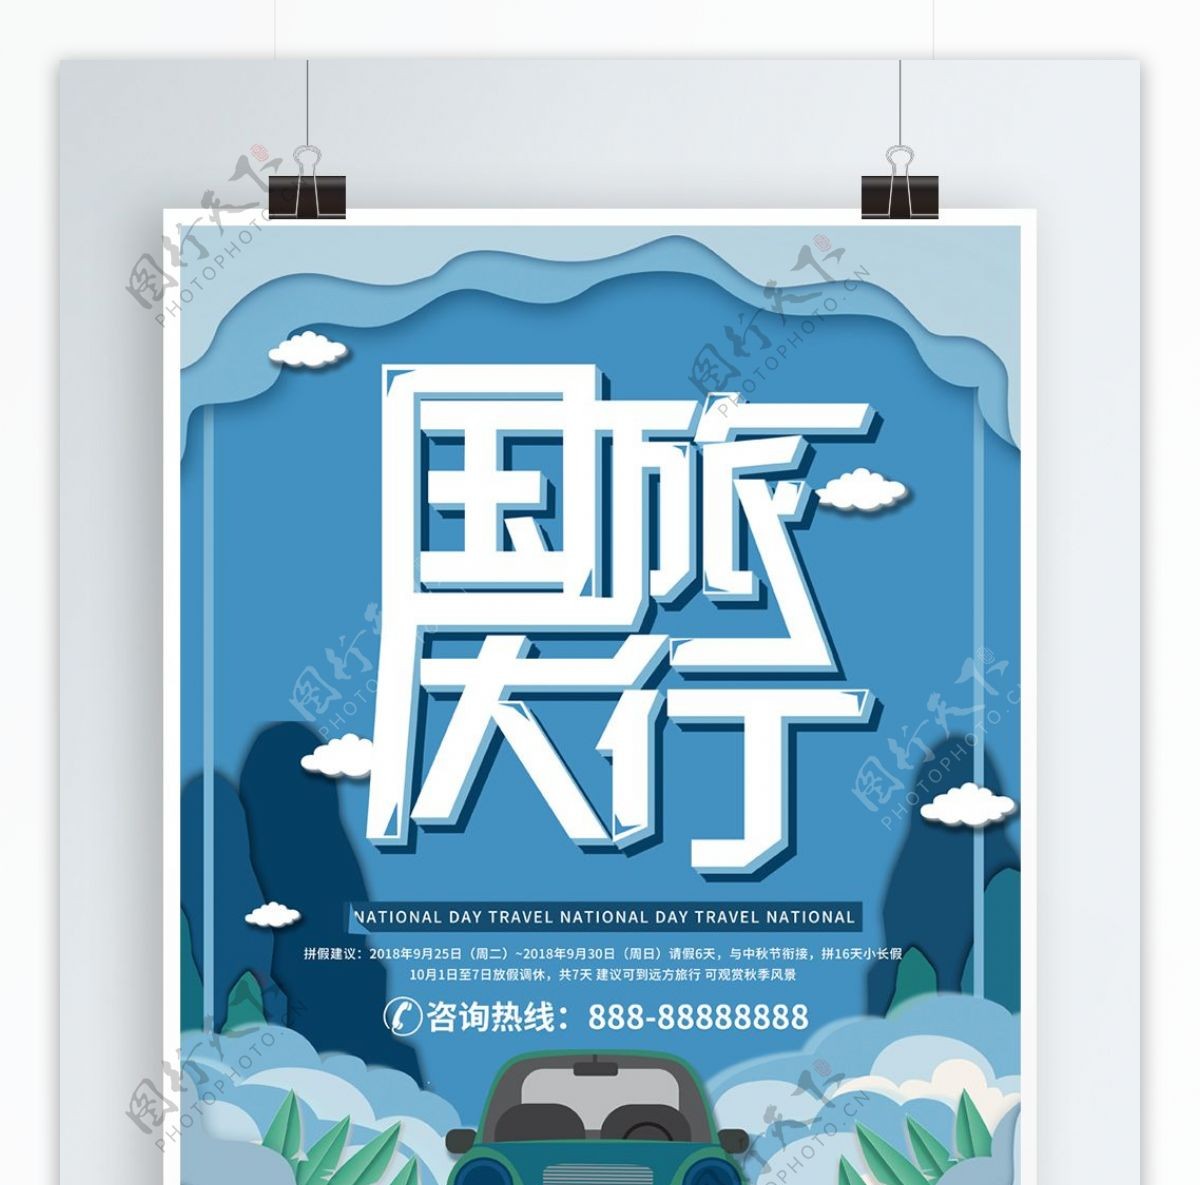 蓝色微立体剪纸风国庆旅游海报